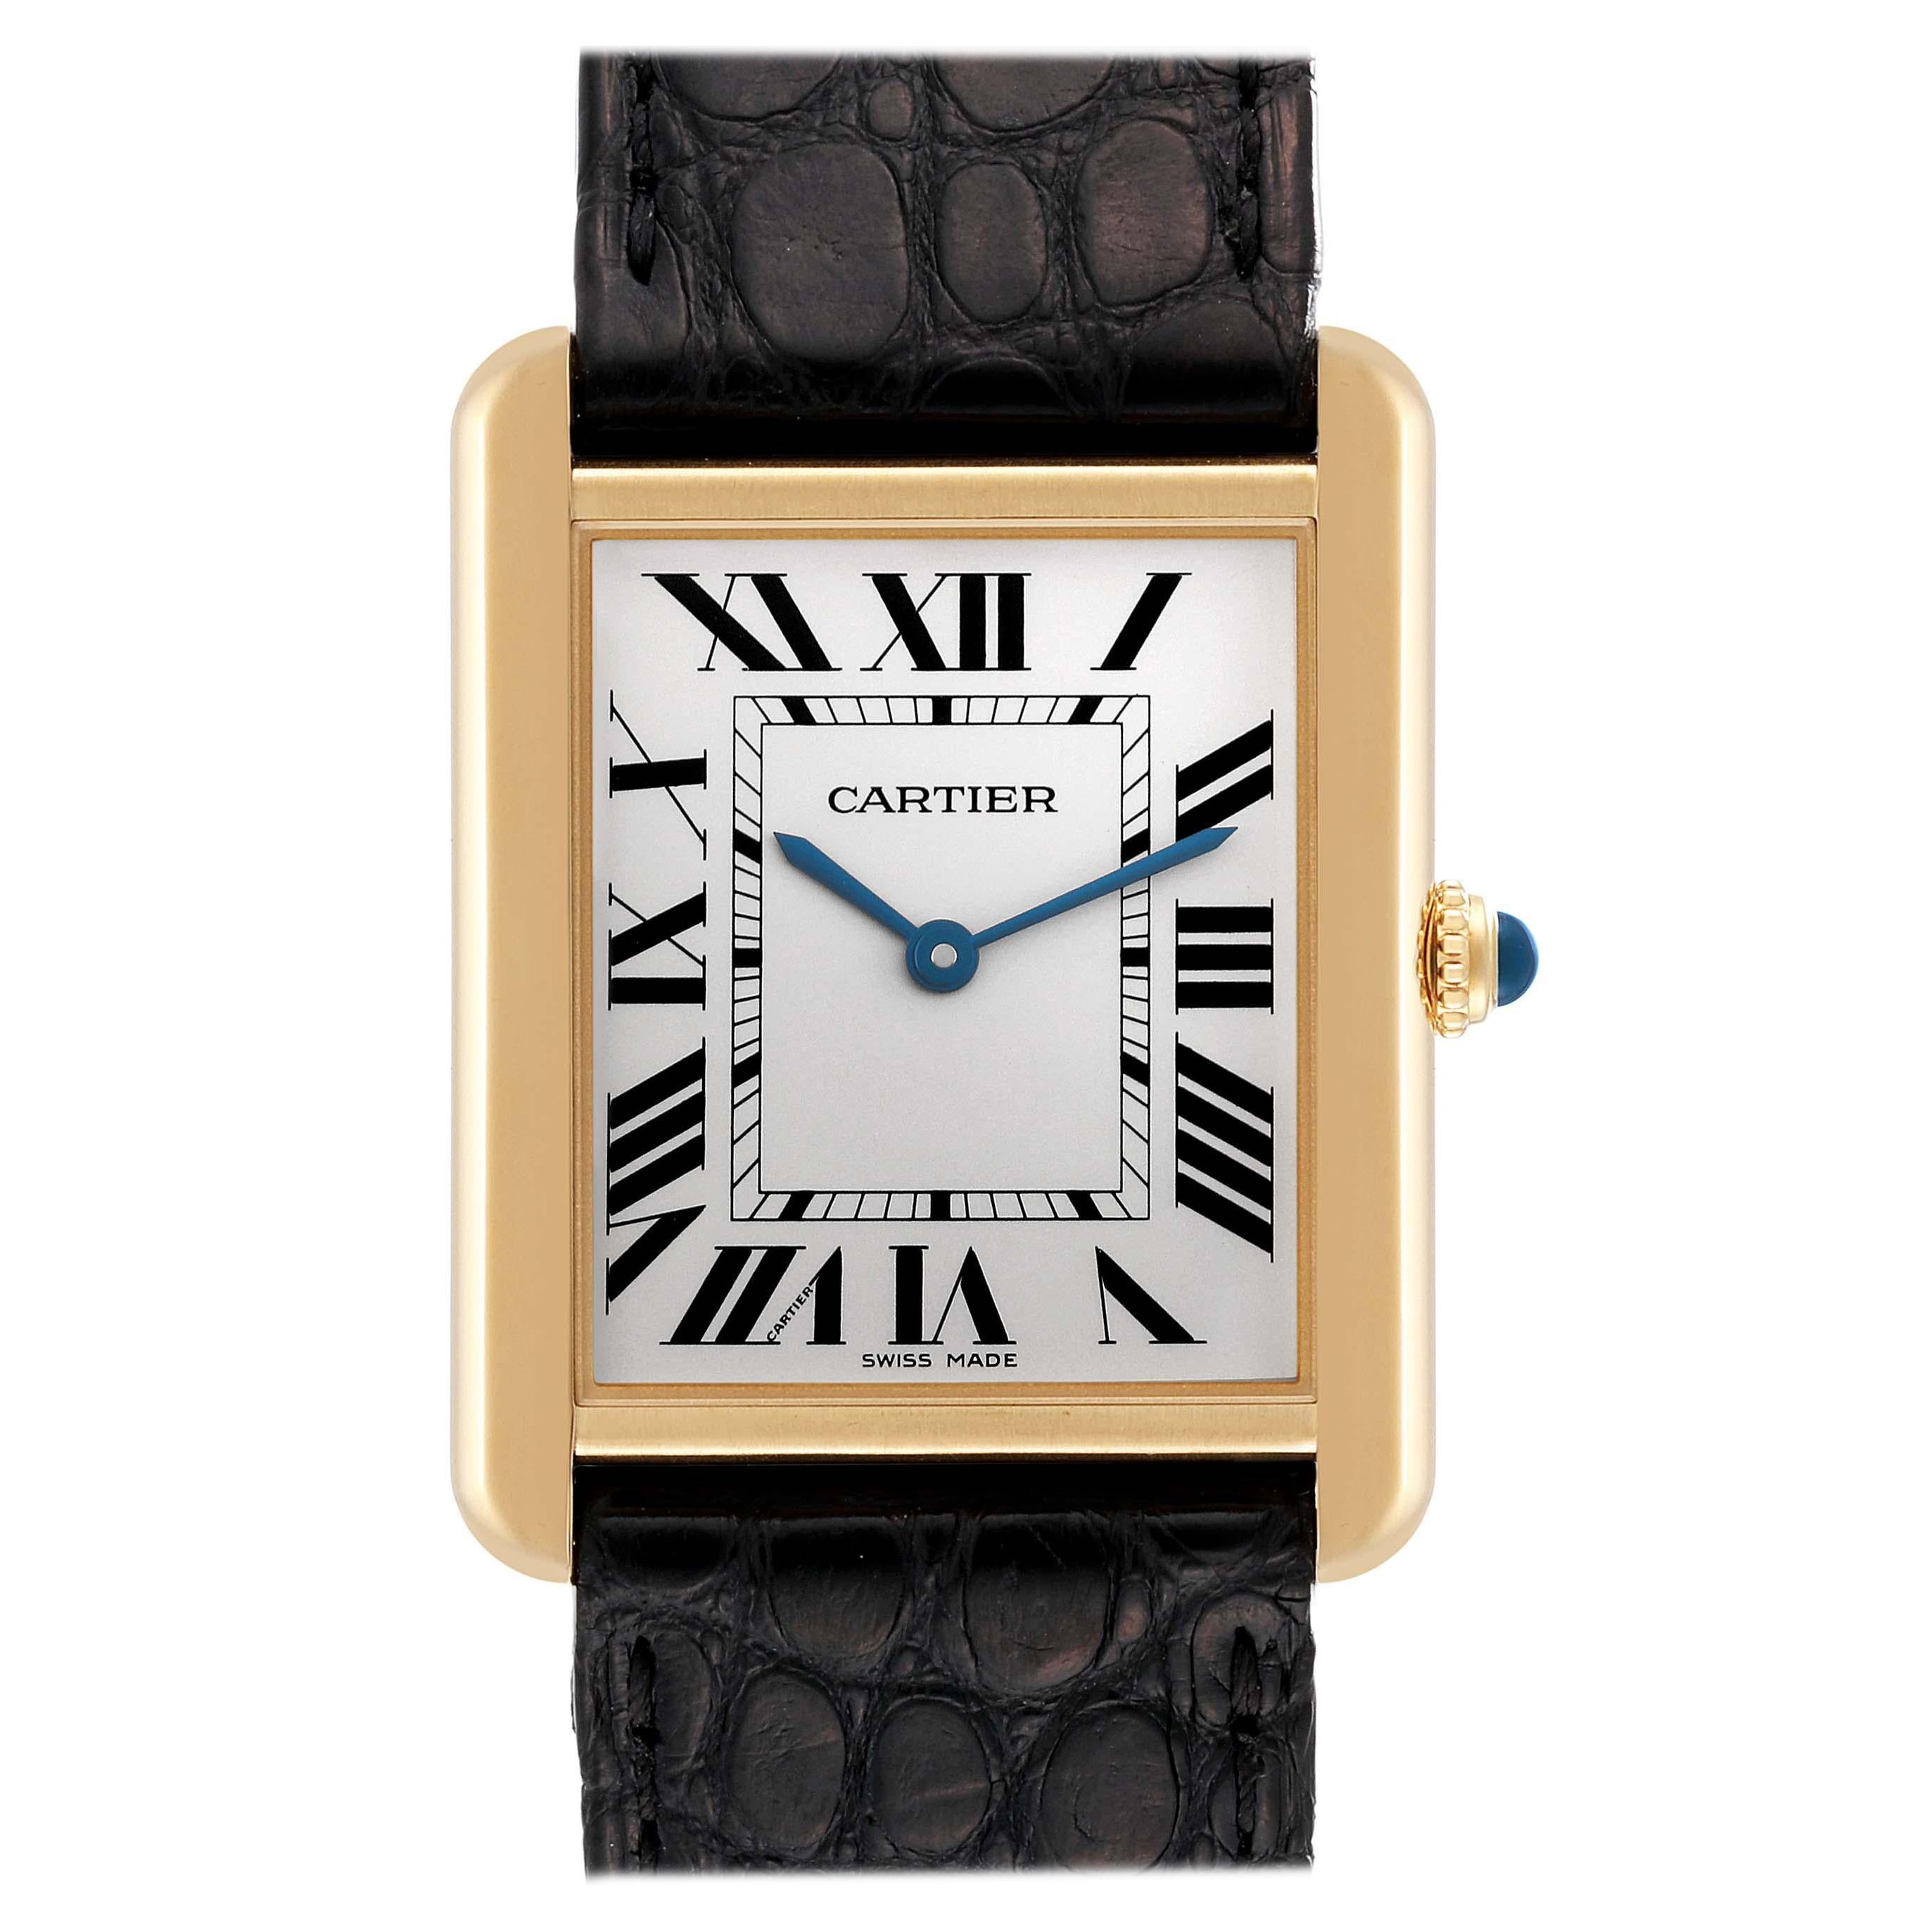 Is Cartier a luxury watch?